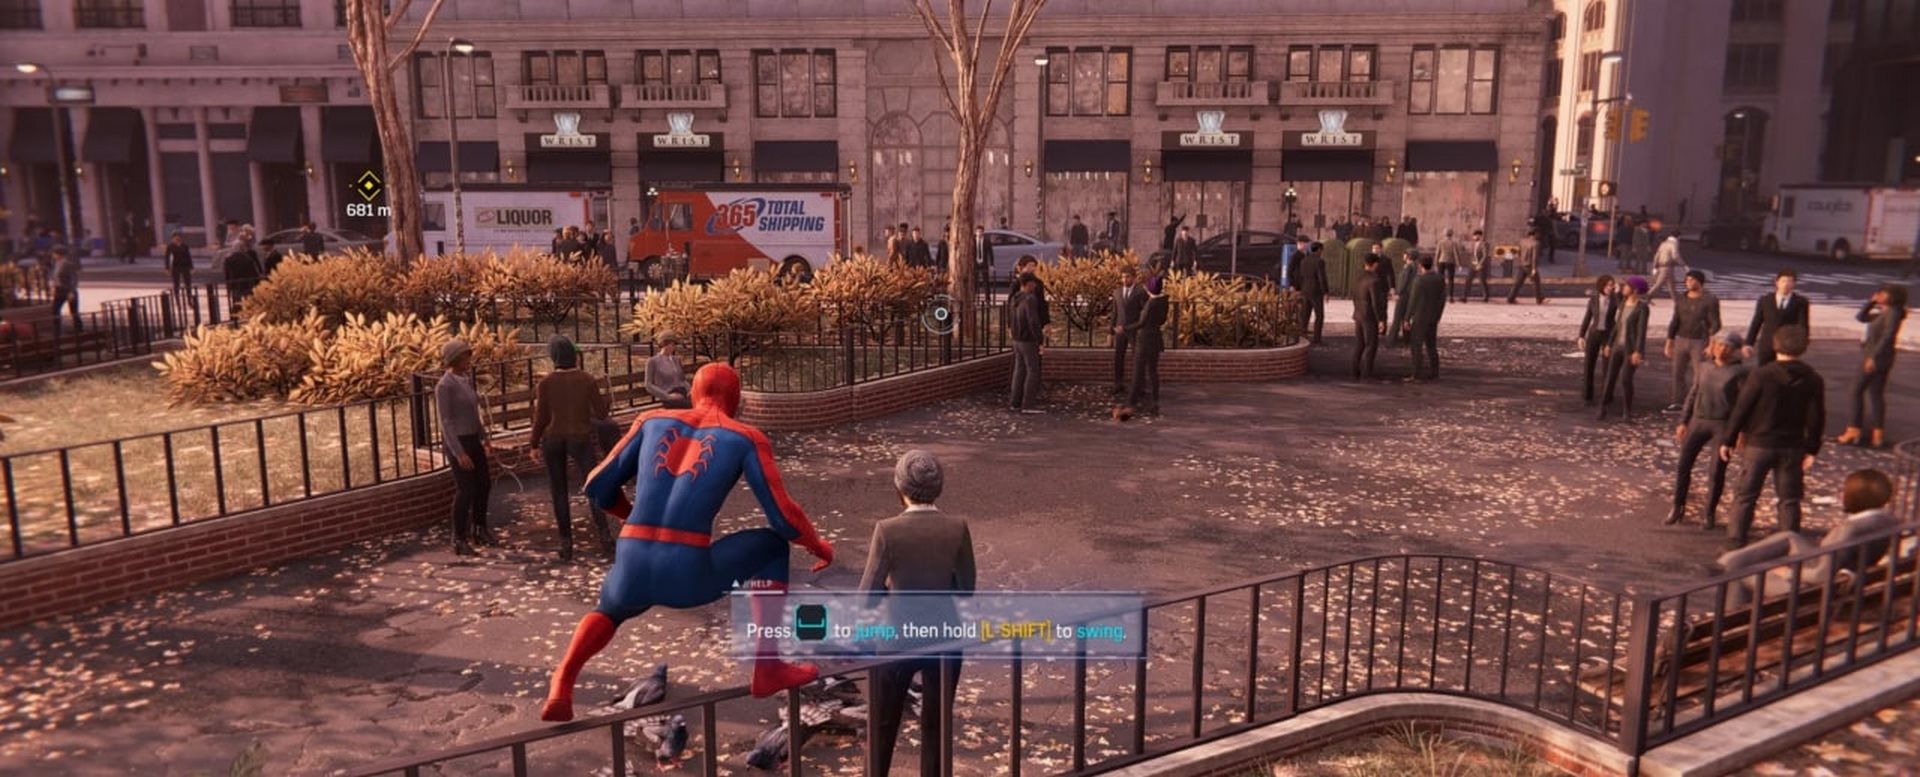 تصویری از مرد عنکبوتی درحال گذر از یک پارک. از نسخه کامپیوتر بازی Marvel's Spider-Man